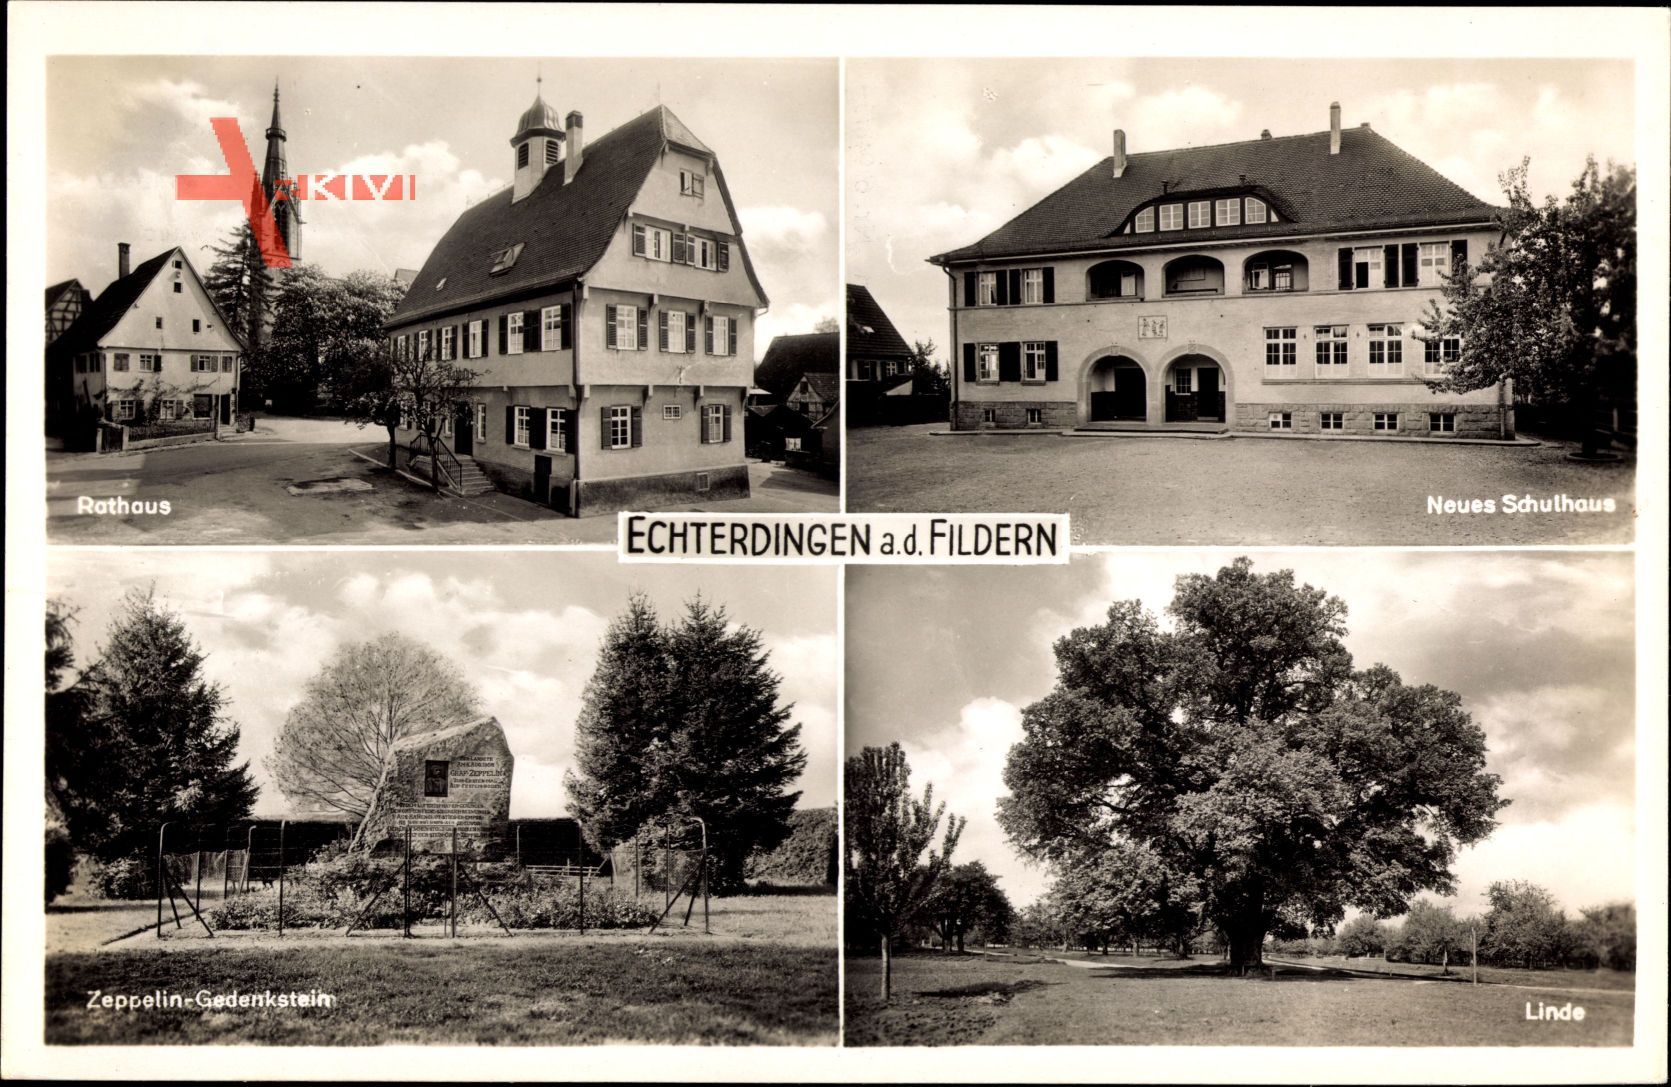 Leinfelden Echterdingen a.d. Fildern, Rathaus, Zeppelin Gedenkstein, Schule